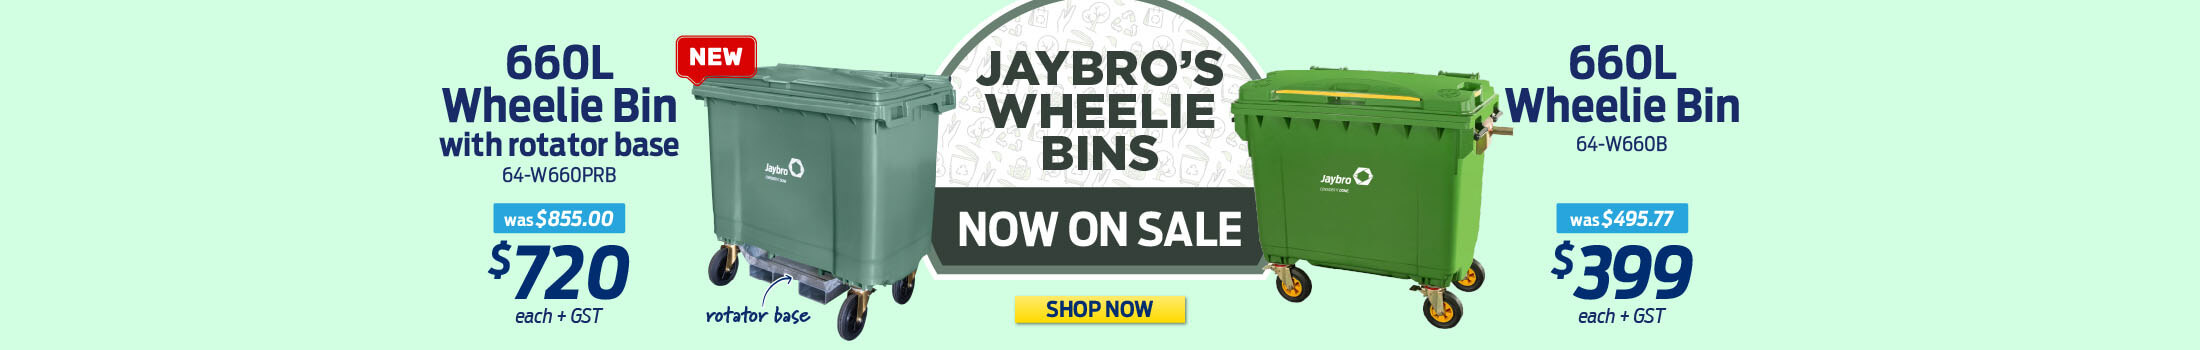 Jaybro Wheelie Bin Sale - Desktop -AU